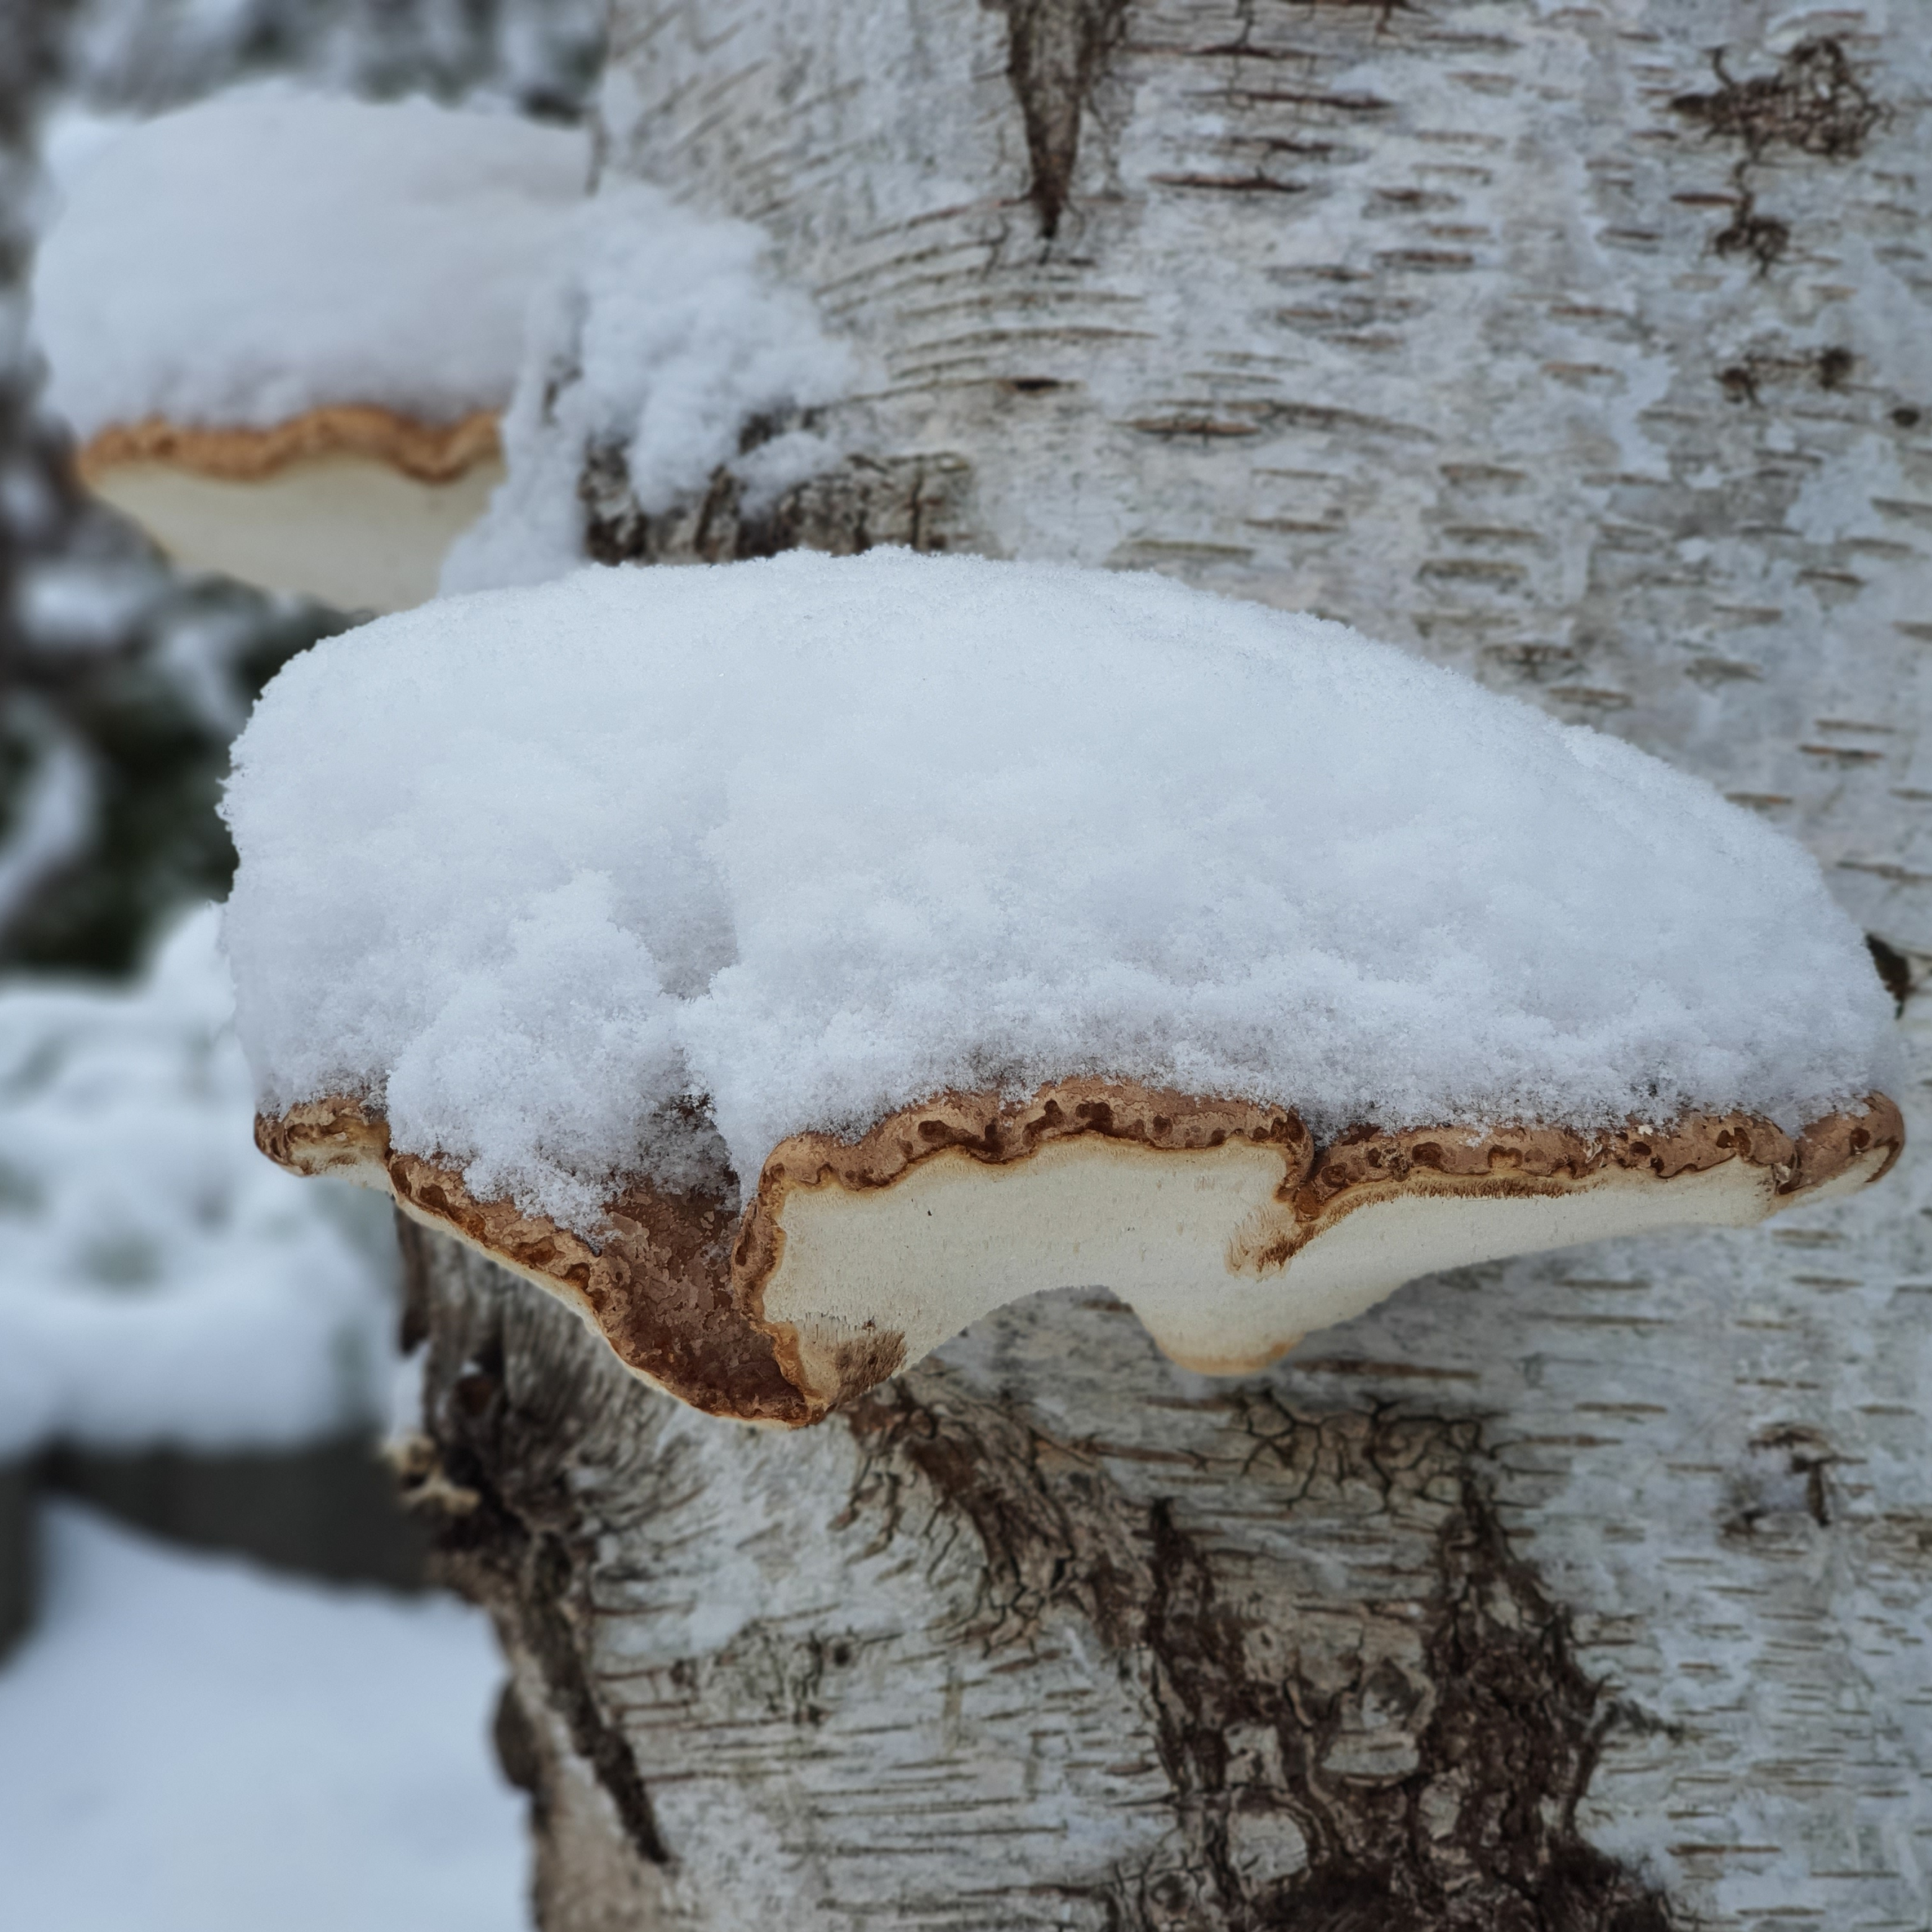 树桩上的白雪覆盖的蘑菇（2021 年 XNUMX 月冬季图片）